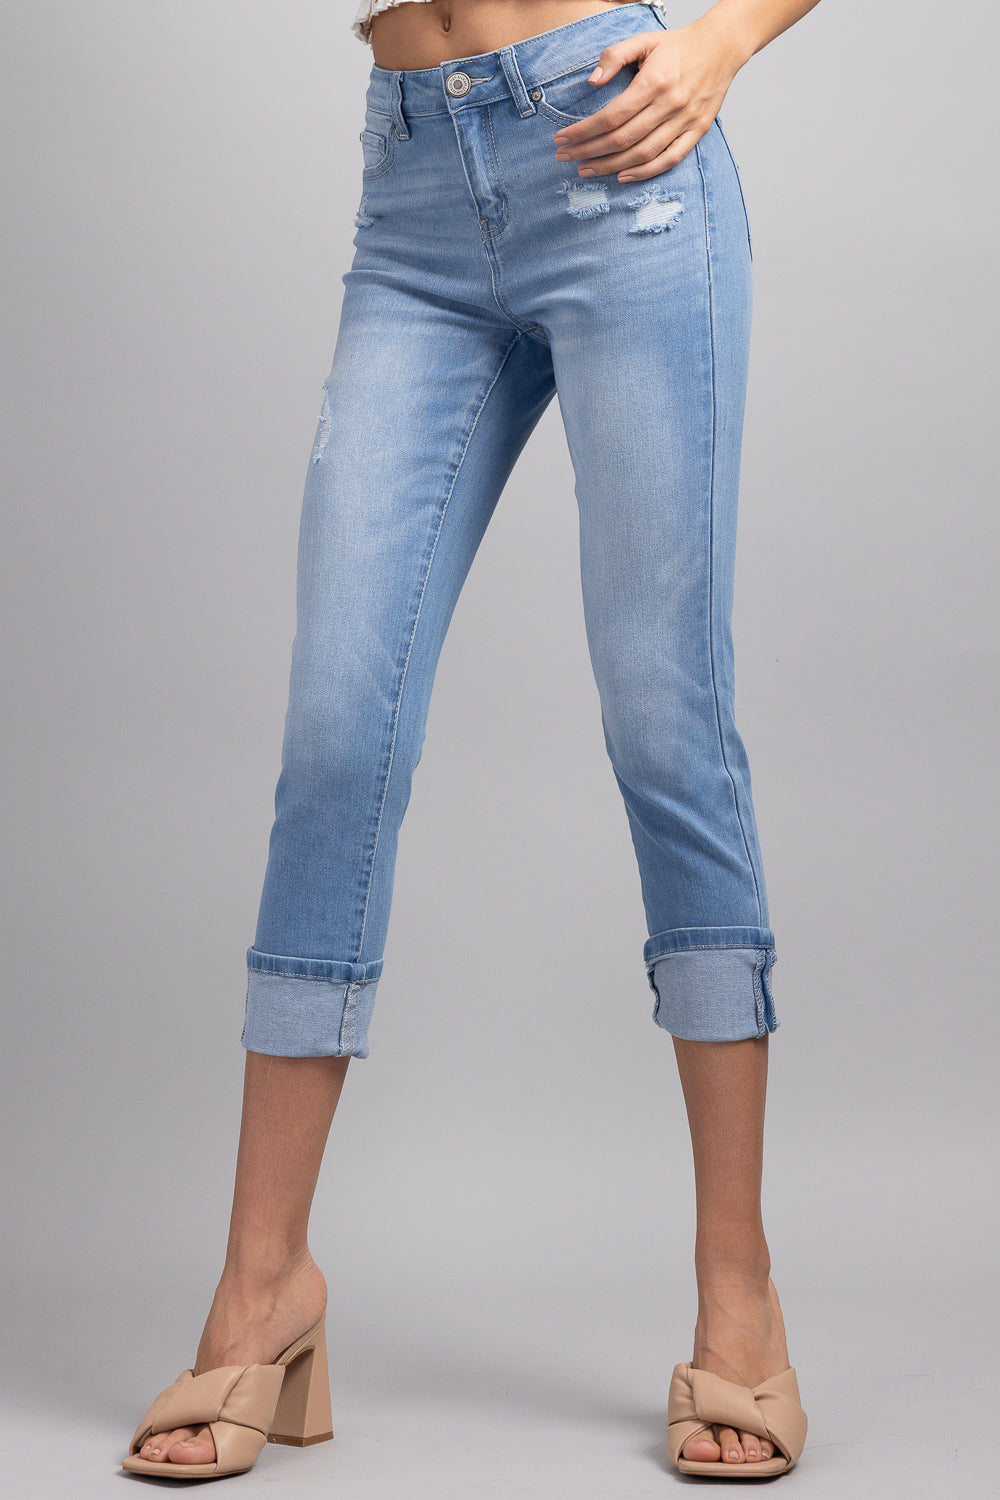 Jeans ajustados cortos de tiro alto con puños anchos